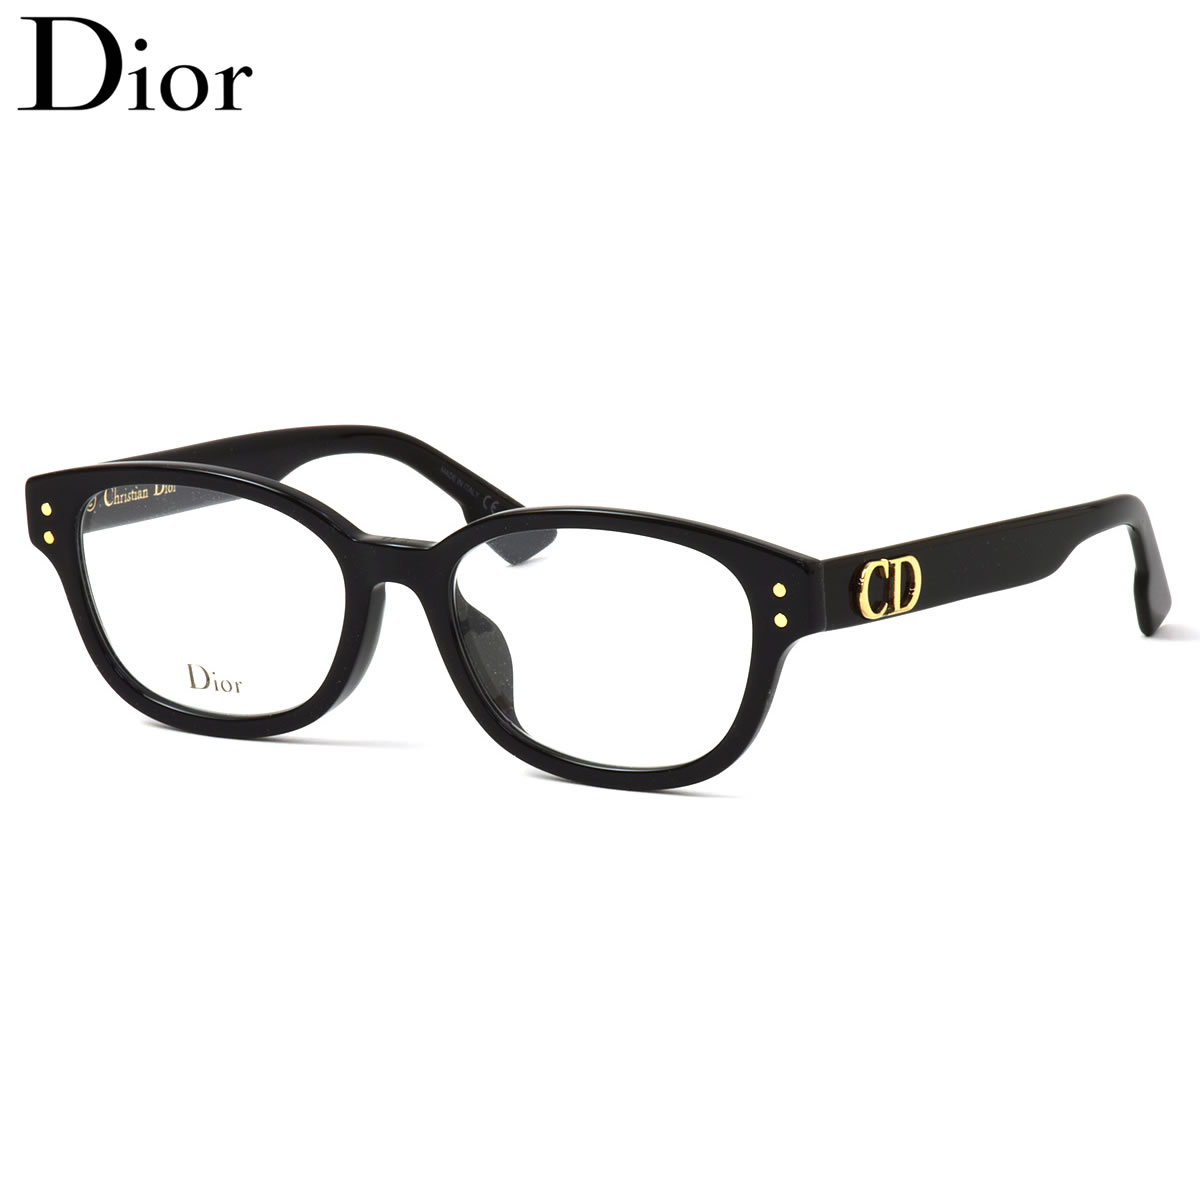 楽天市場】Dior メガネ DiorCD2F 807 51 ディオール クリスチャン 